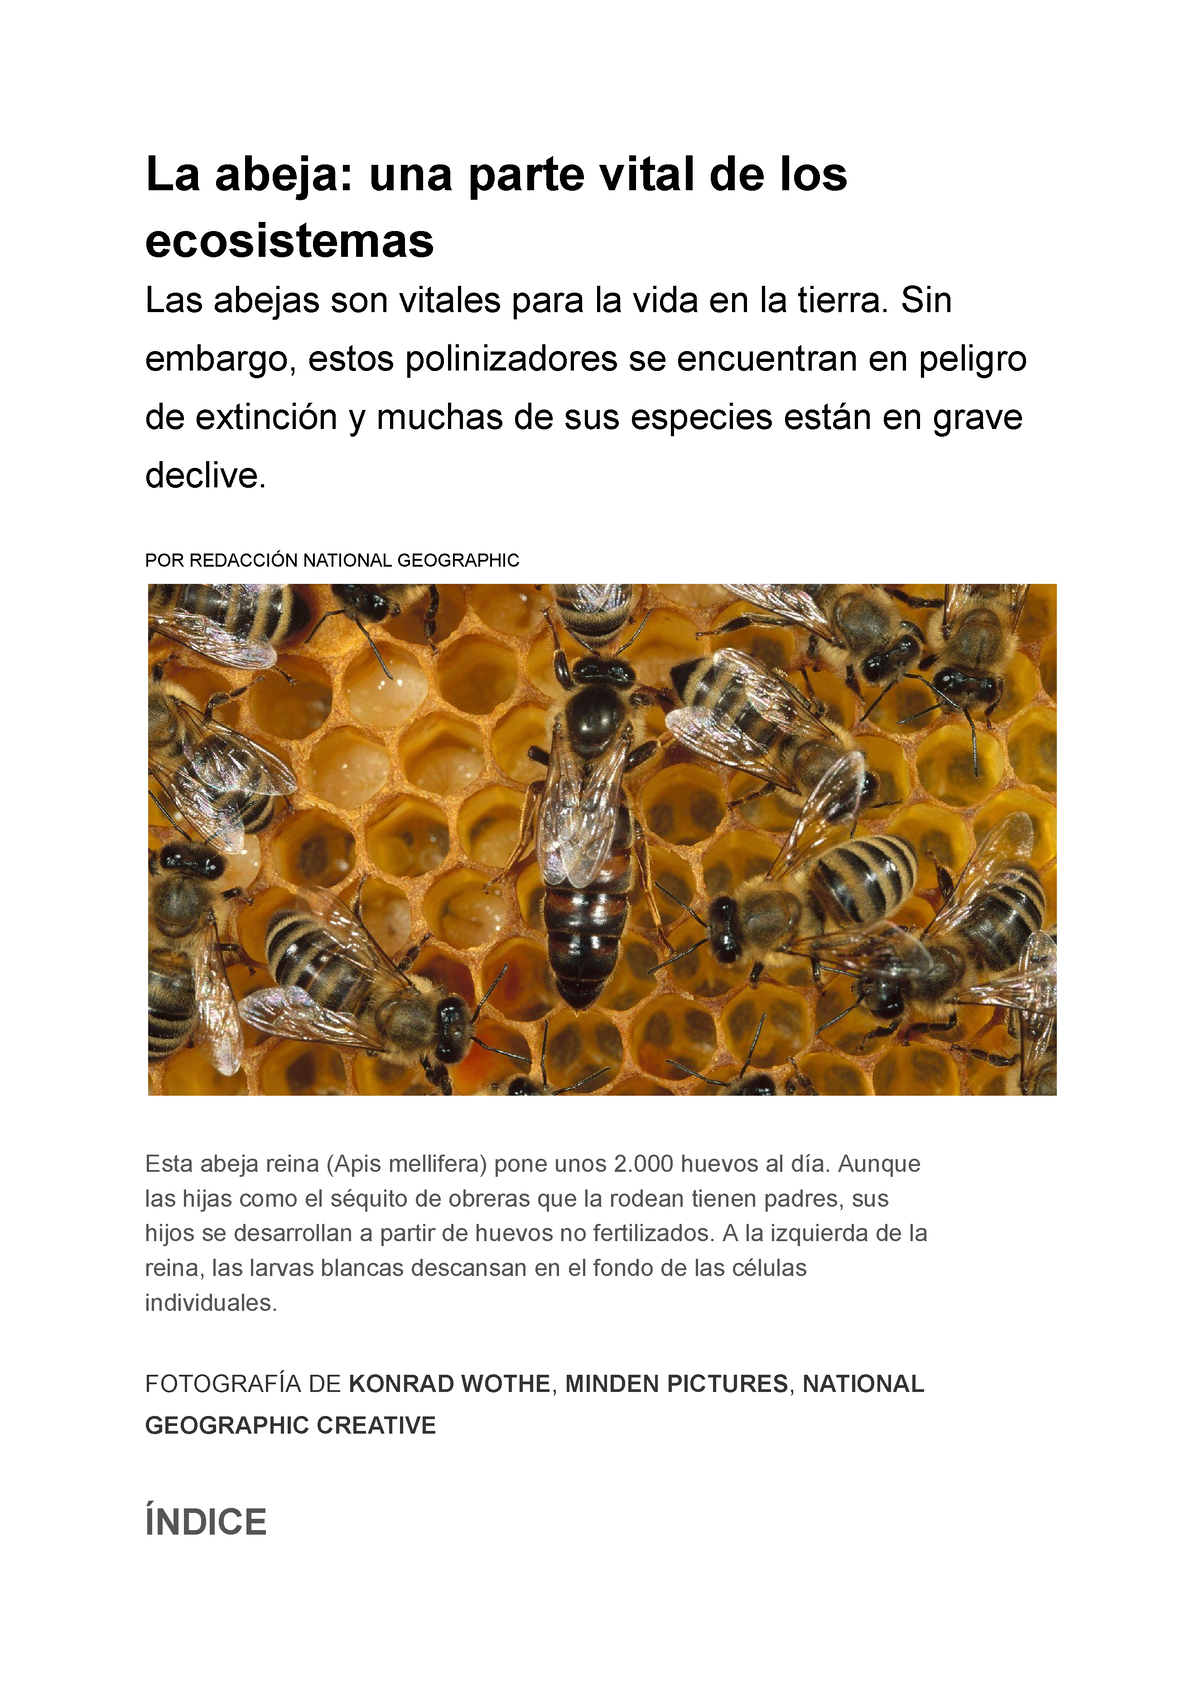 La abeja: una parte vital de los ecosistemas